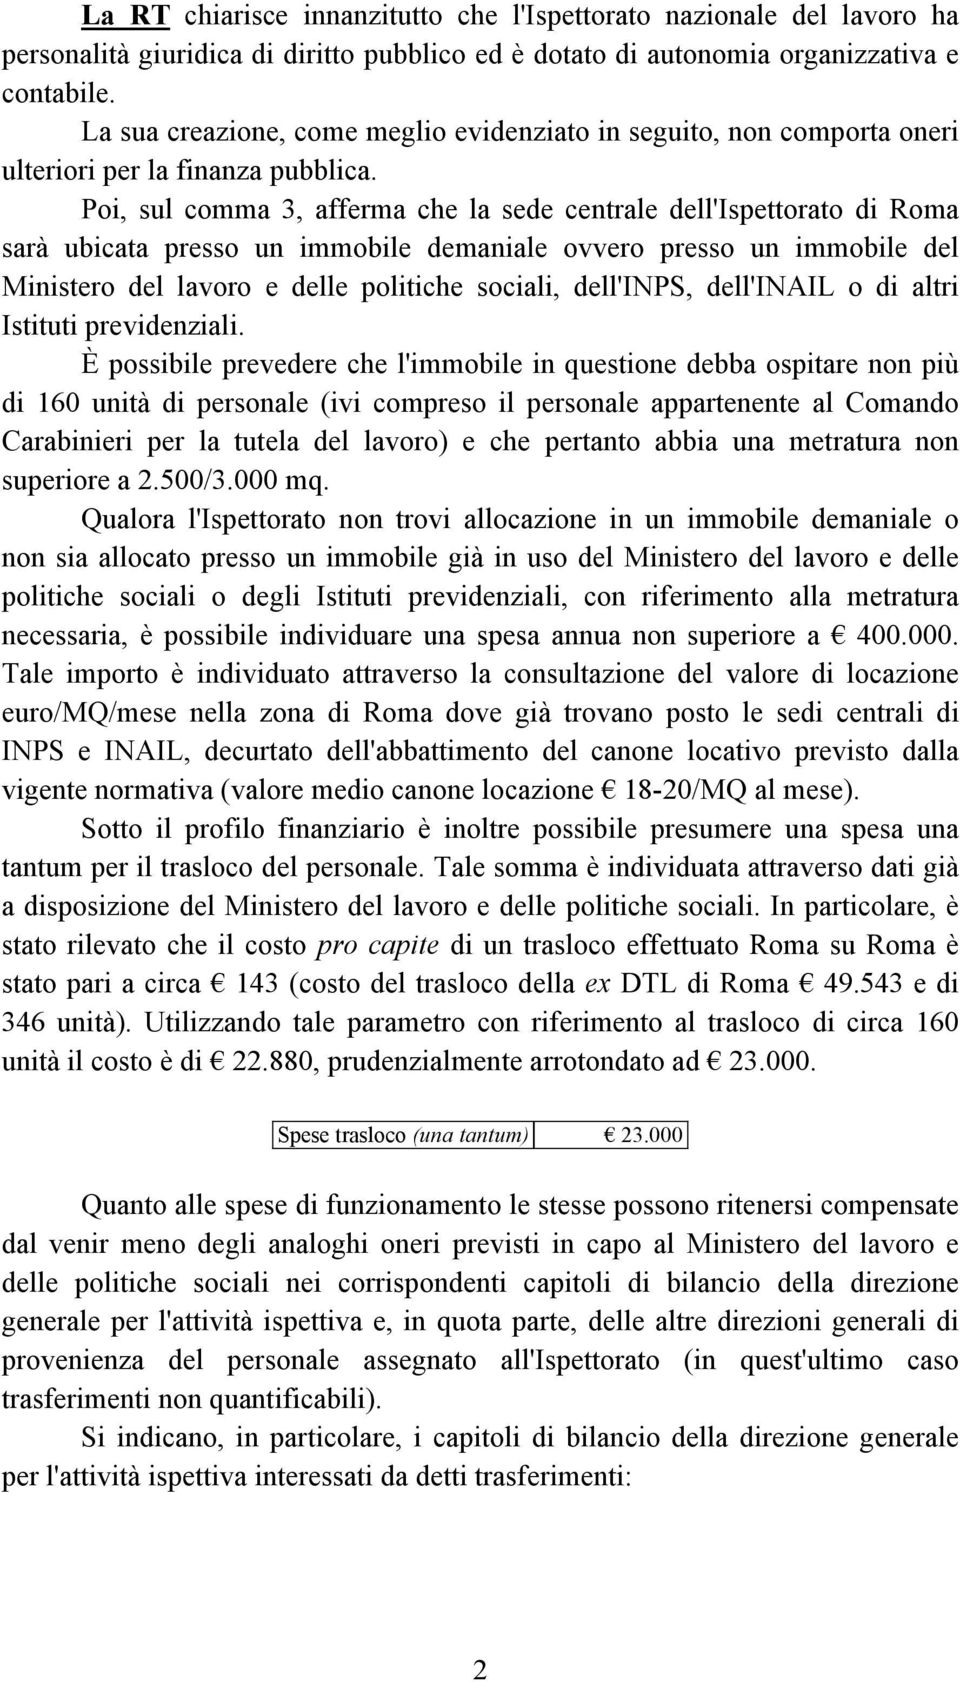 Poi, sul comma 3, afferma che la sede centrale dell'ispettorato di Roma sarà ubicata presso un immobile demaniale ovvero presso un immobile del Ministero del lavoro e delle politiche sociali,